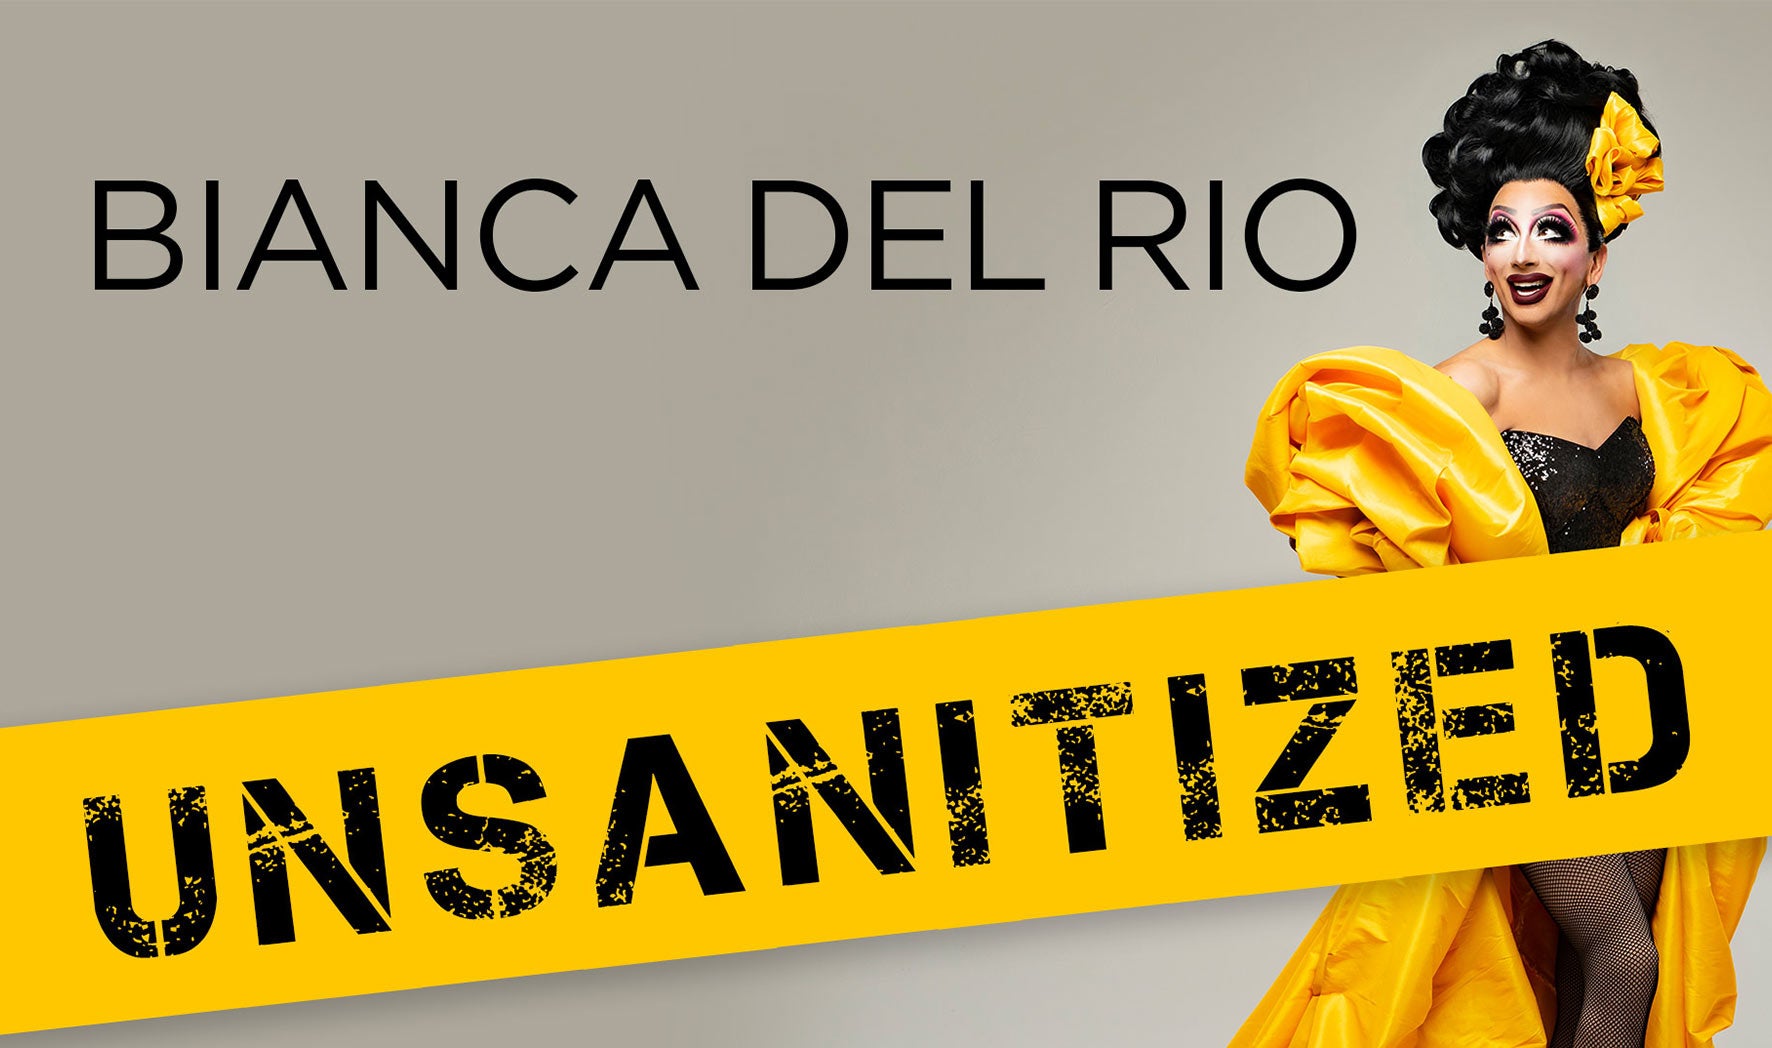 Bianca Del Rio: Unsanitized